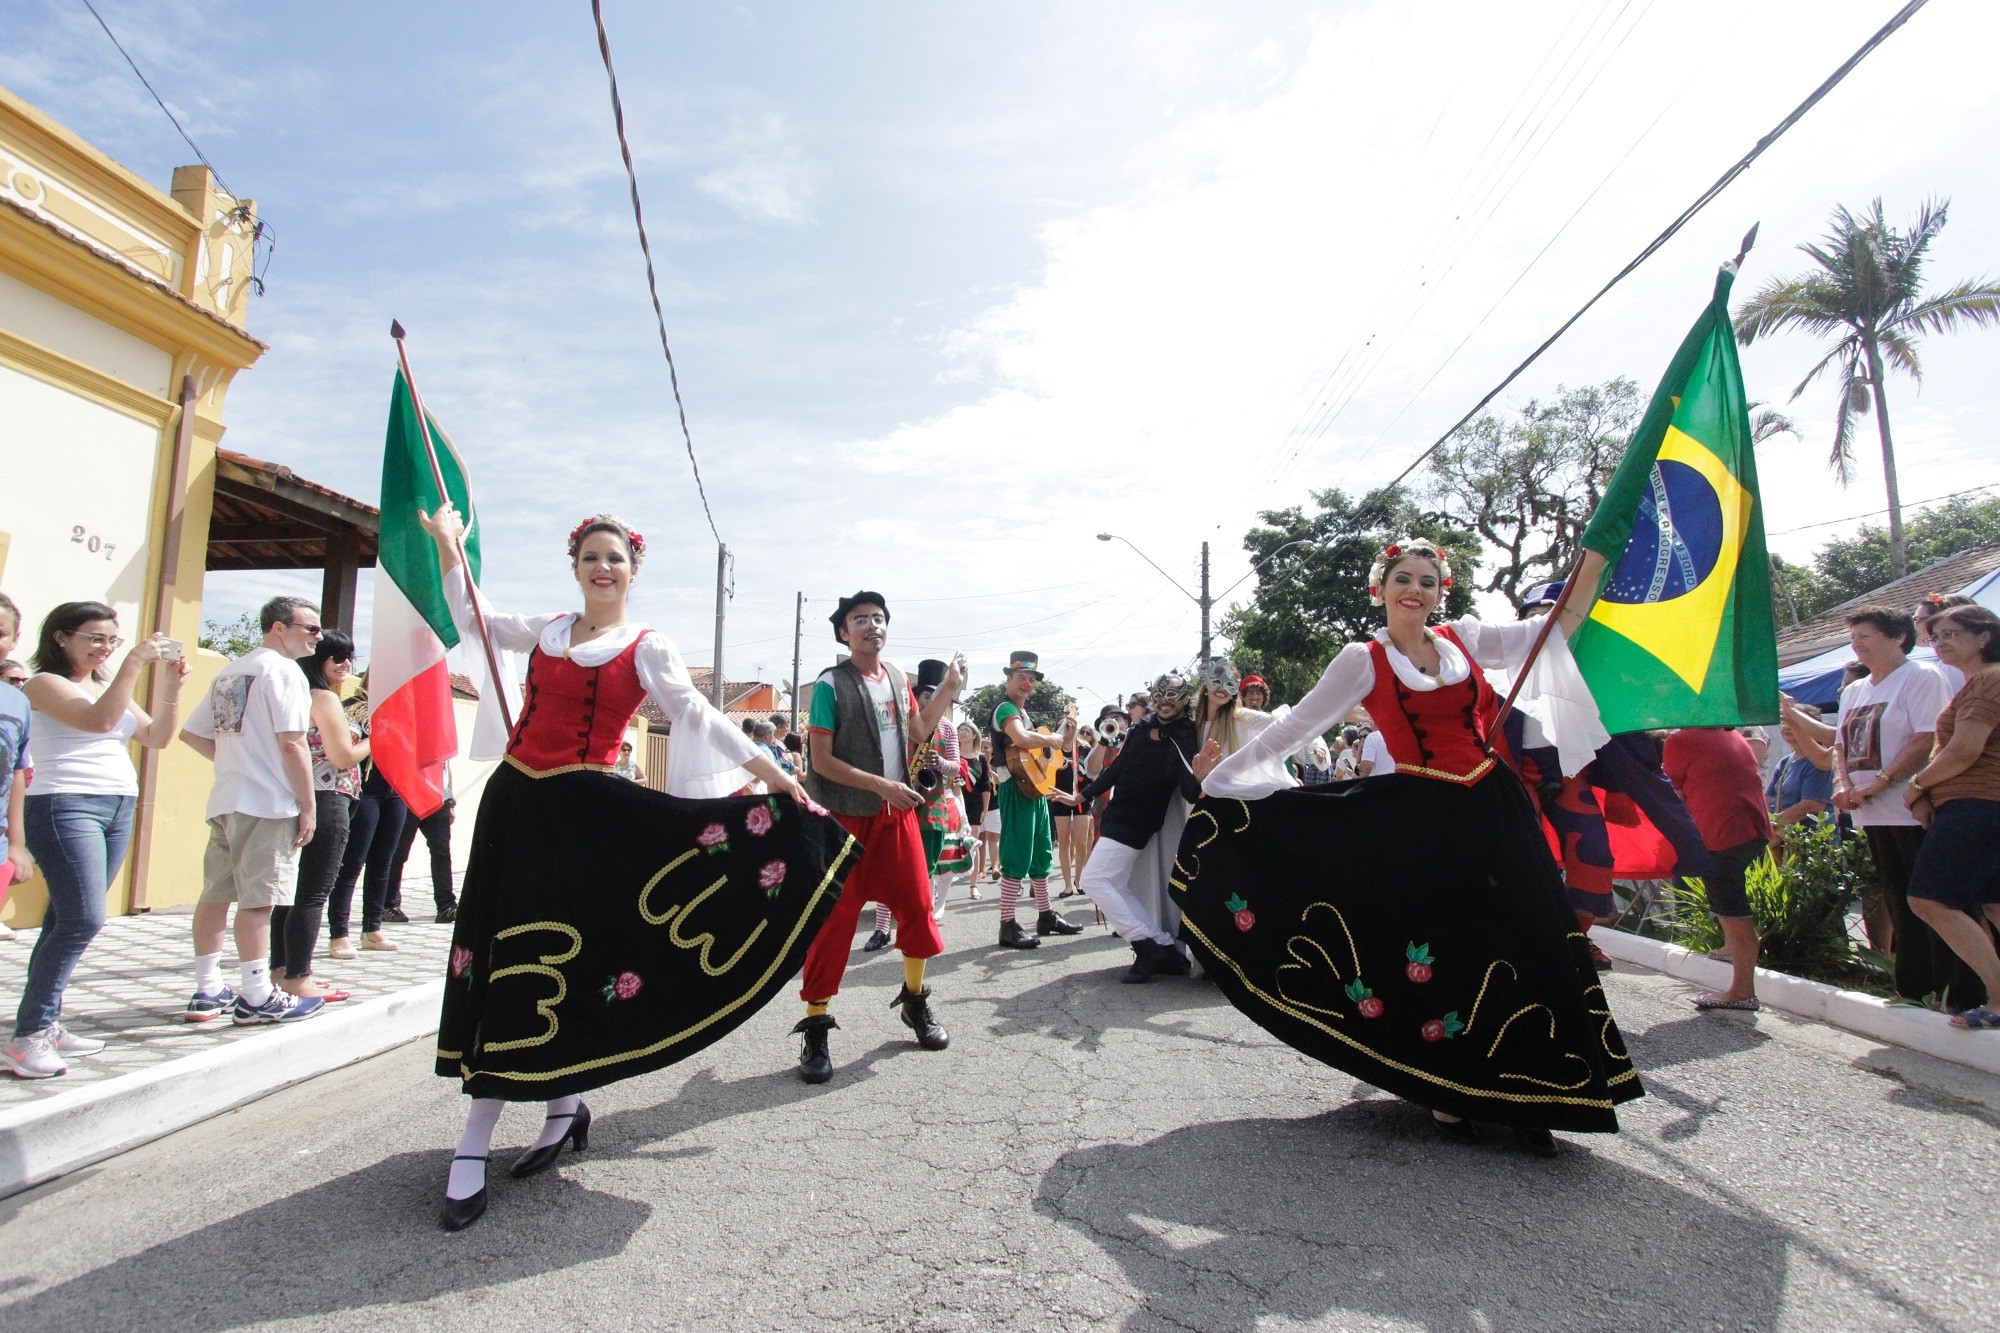 Festa Italiana de Quiririm começa nesta terça-feira em Taubaté; veja a programação